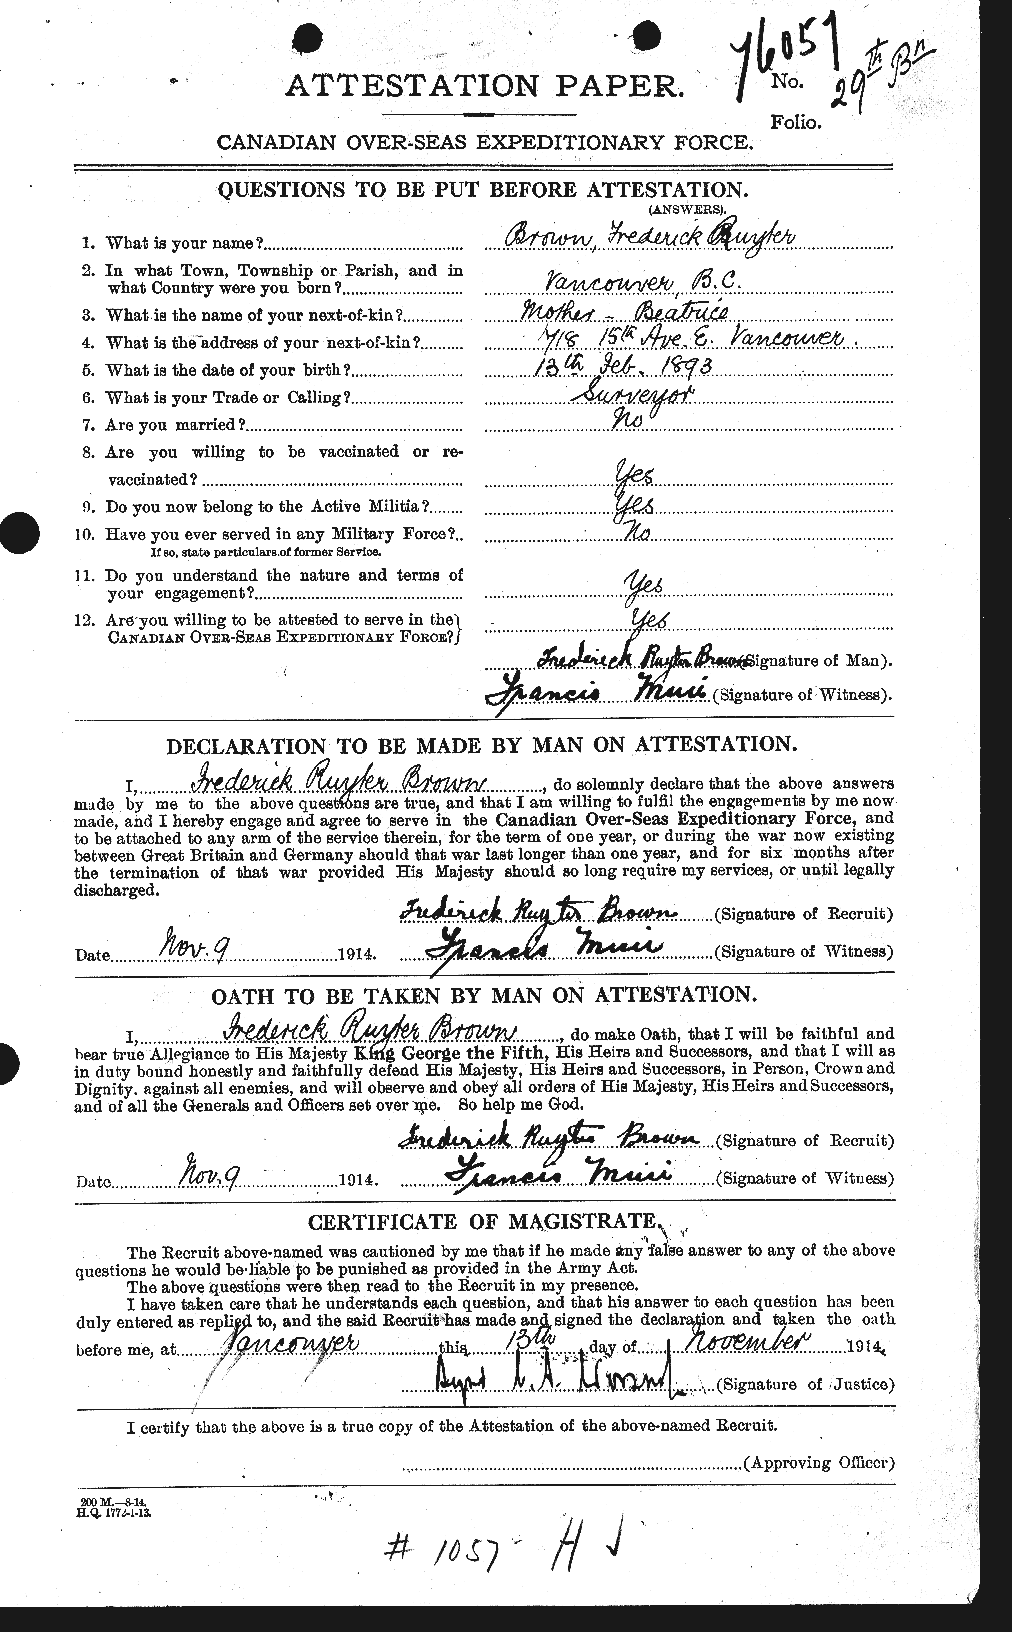 Dossiers du Personnel de la Première Guerre mondiale - CEC 267759a